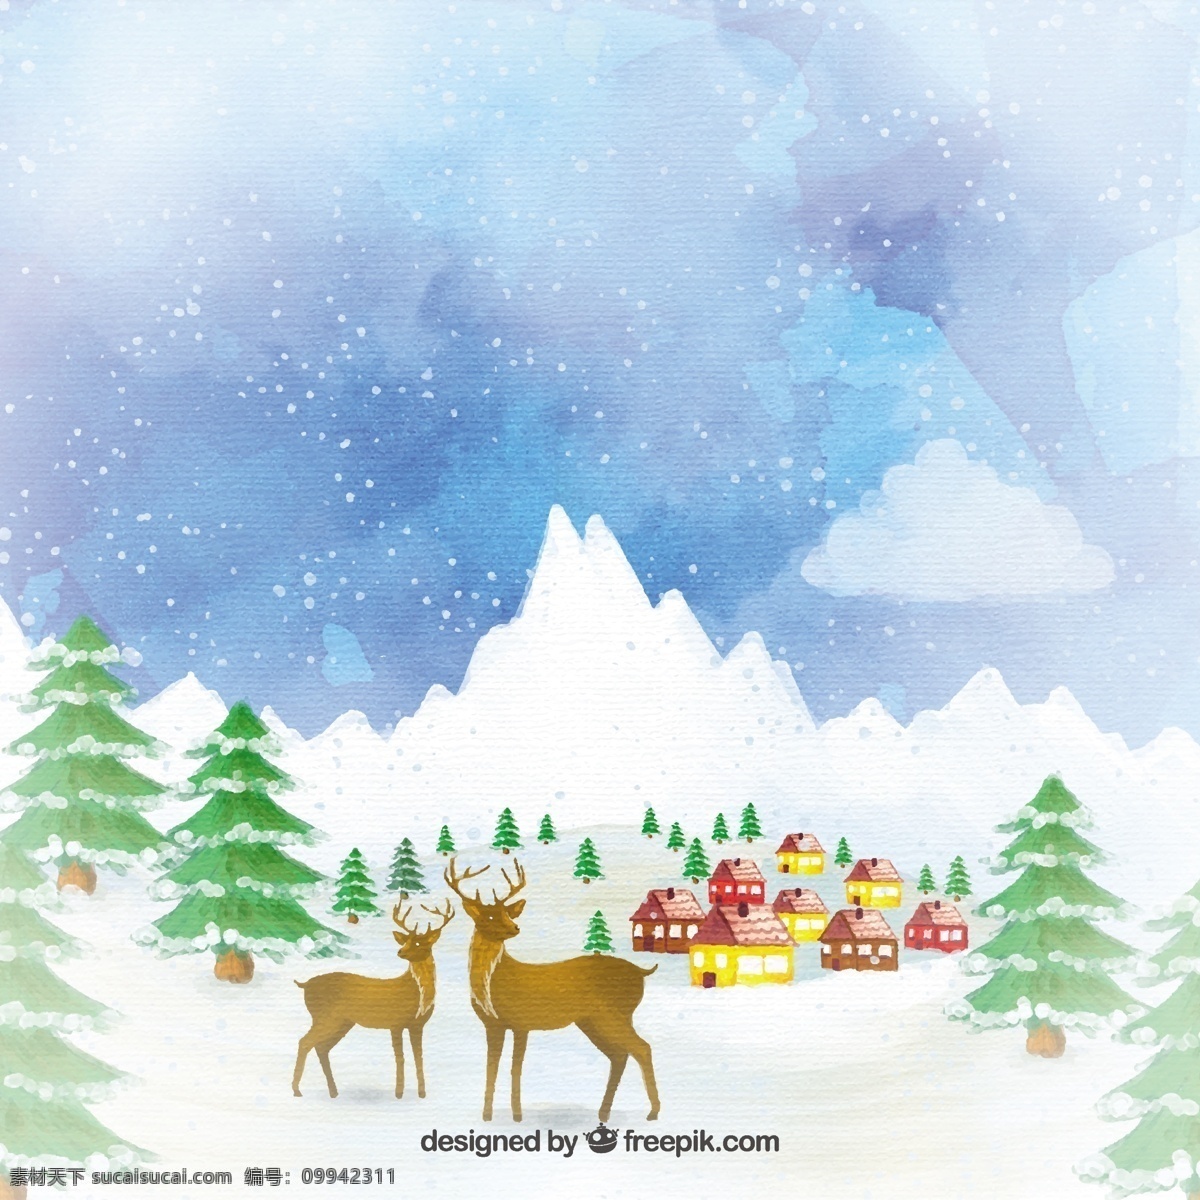 手绘 森林 动物 景观 圣诞节 水彩 天空 快乐 圣诞 冬天 绘制 庆祝 假日